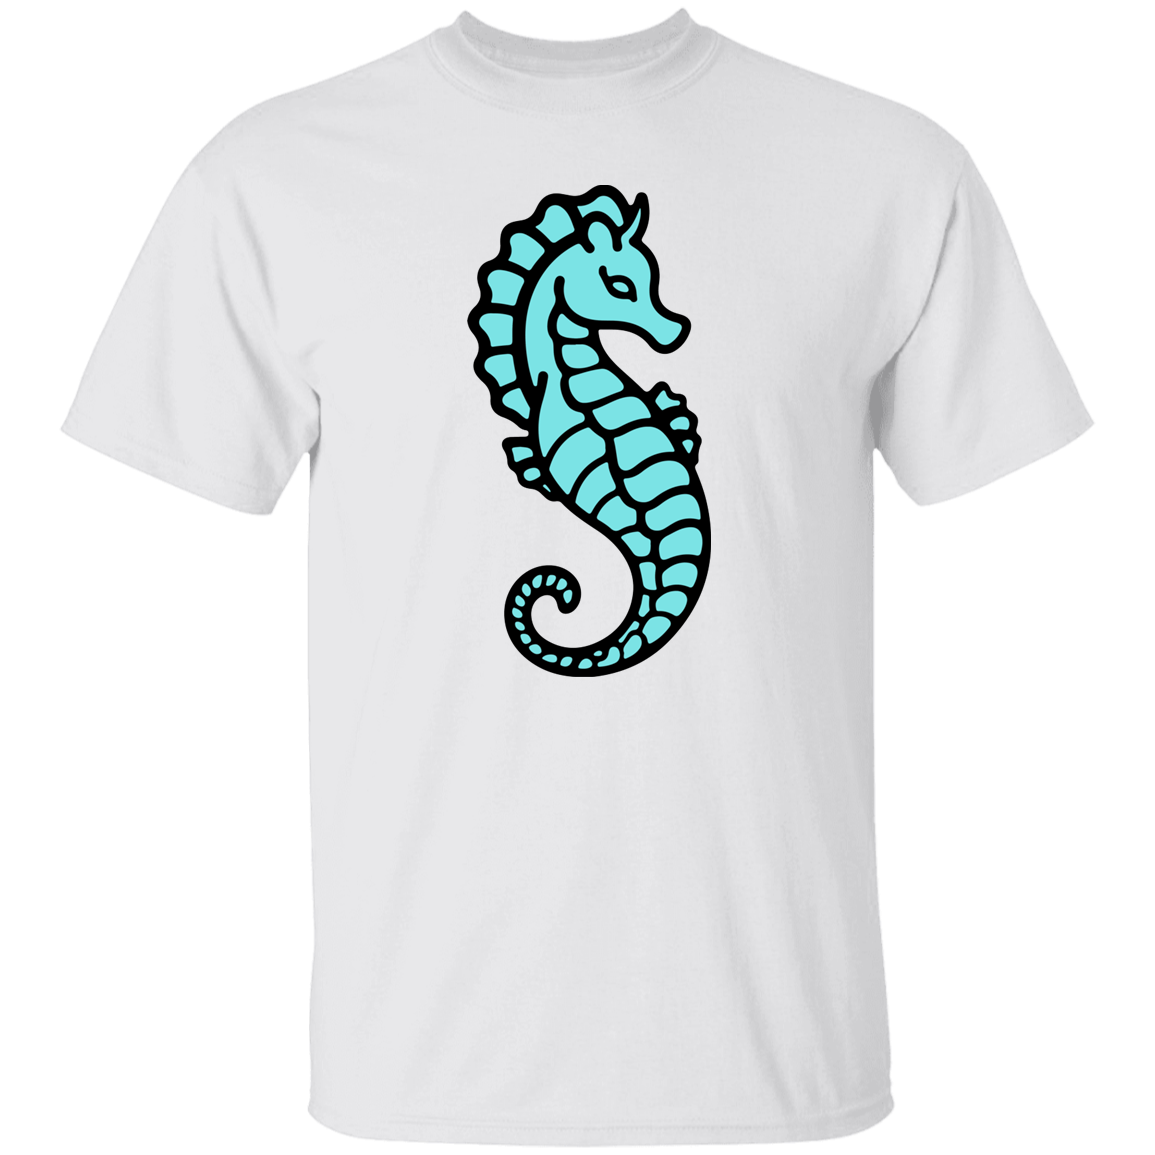 Seahorse 5.3 oz. T-Shirt